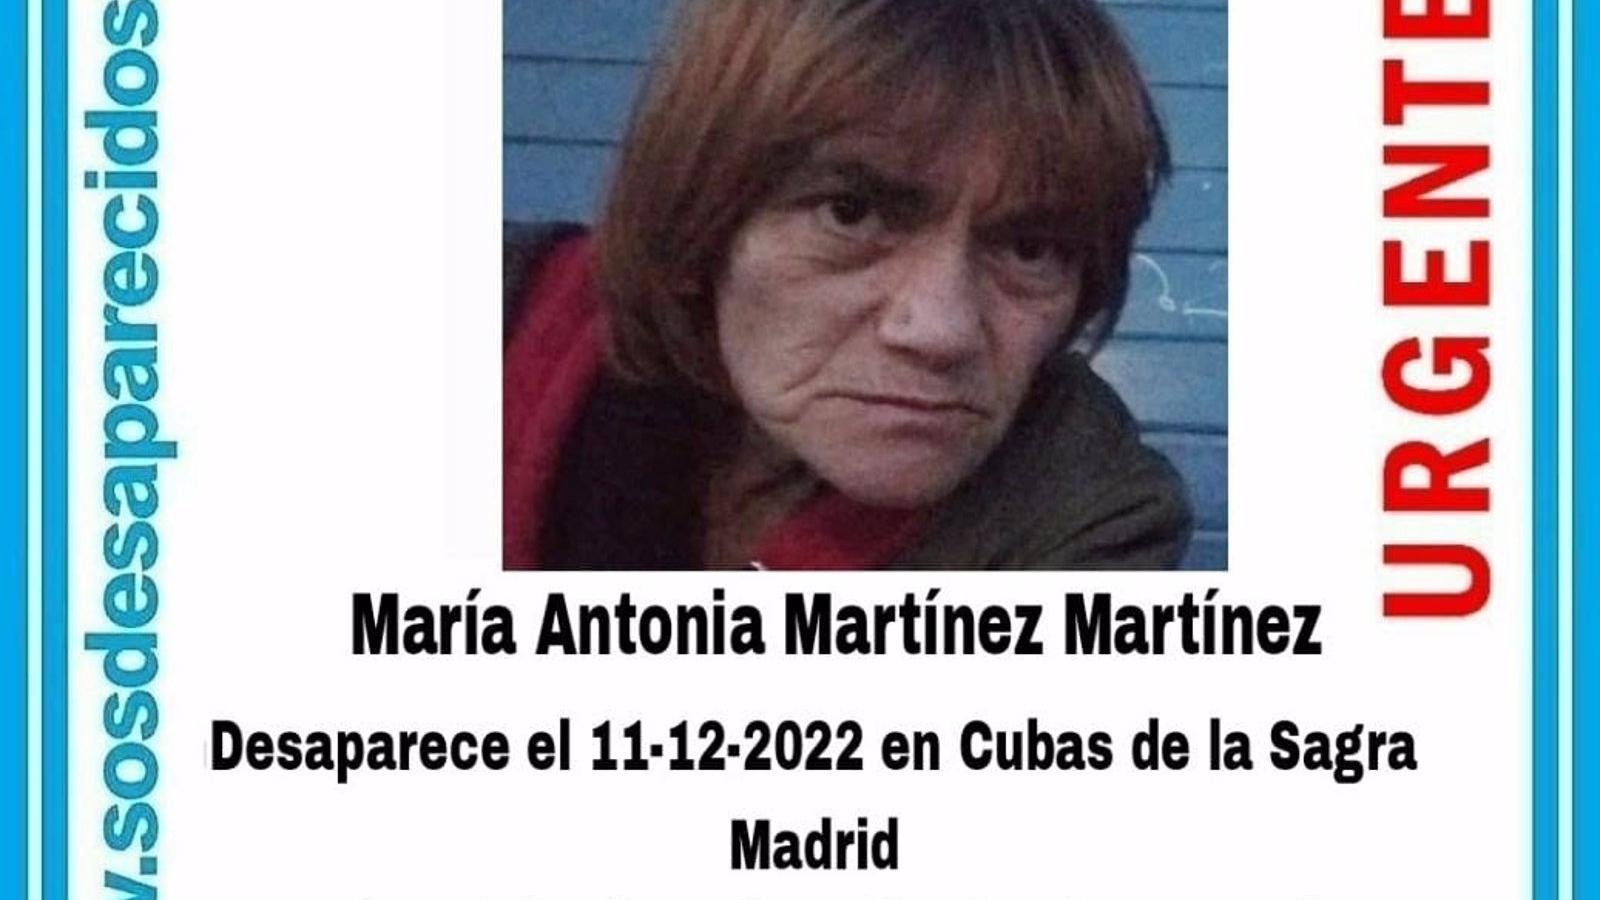  Buscan a una mujer de mediana edad desaparecida en Cubas de la Sagra